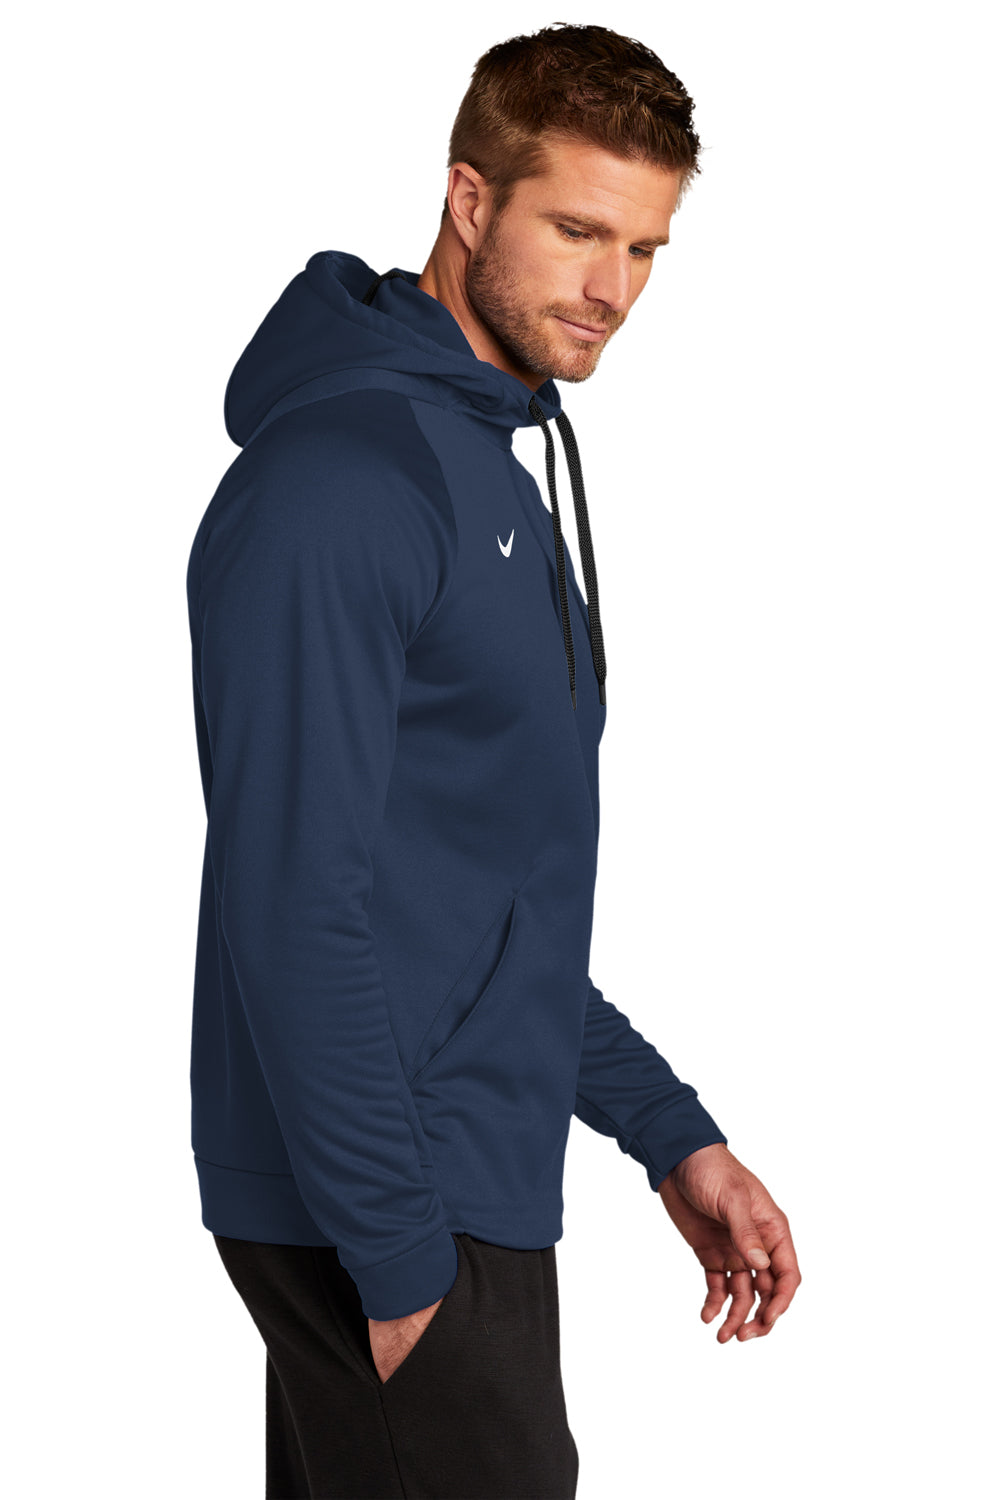 Nike CN9473 Mens Therma-Fit Moisture Wicking Fleece Hooded Sweatshirt Hoodie Team Navy Blue Model Side